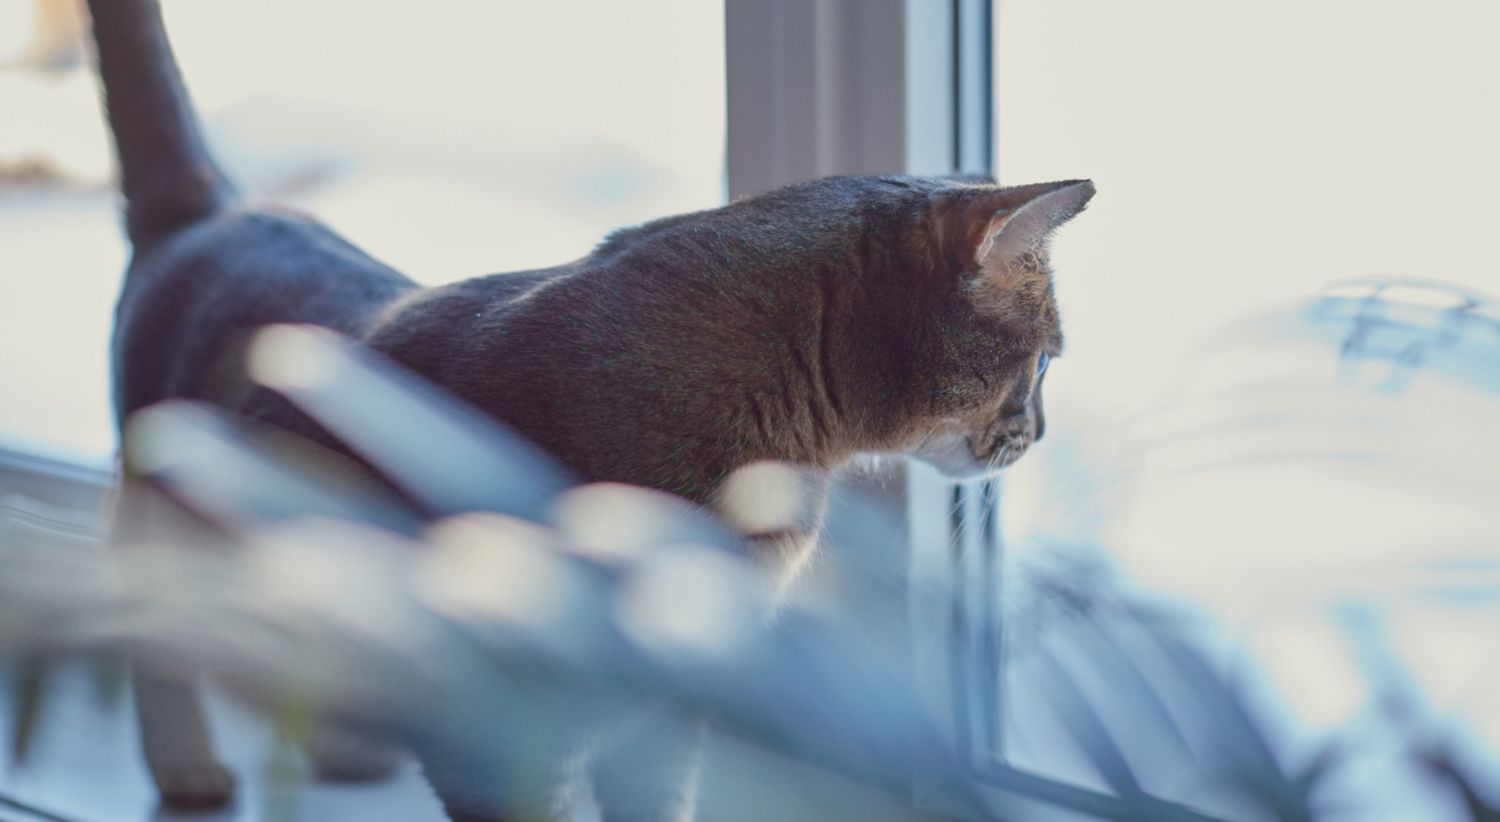 Katt i vinduskarmen.jpg